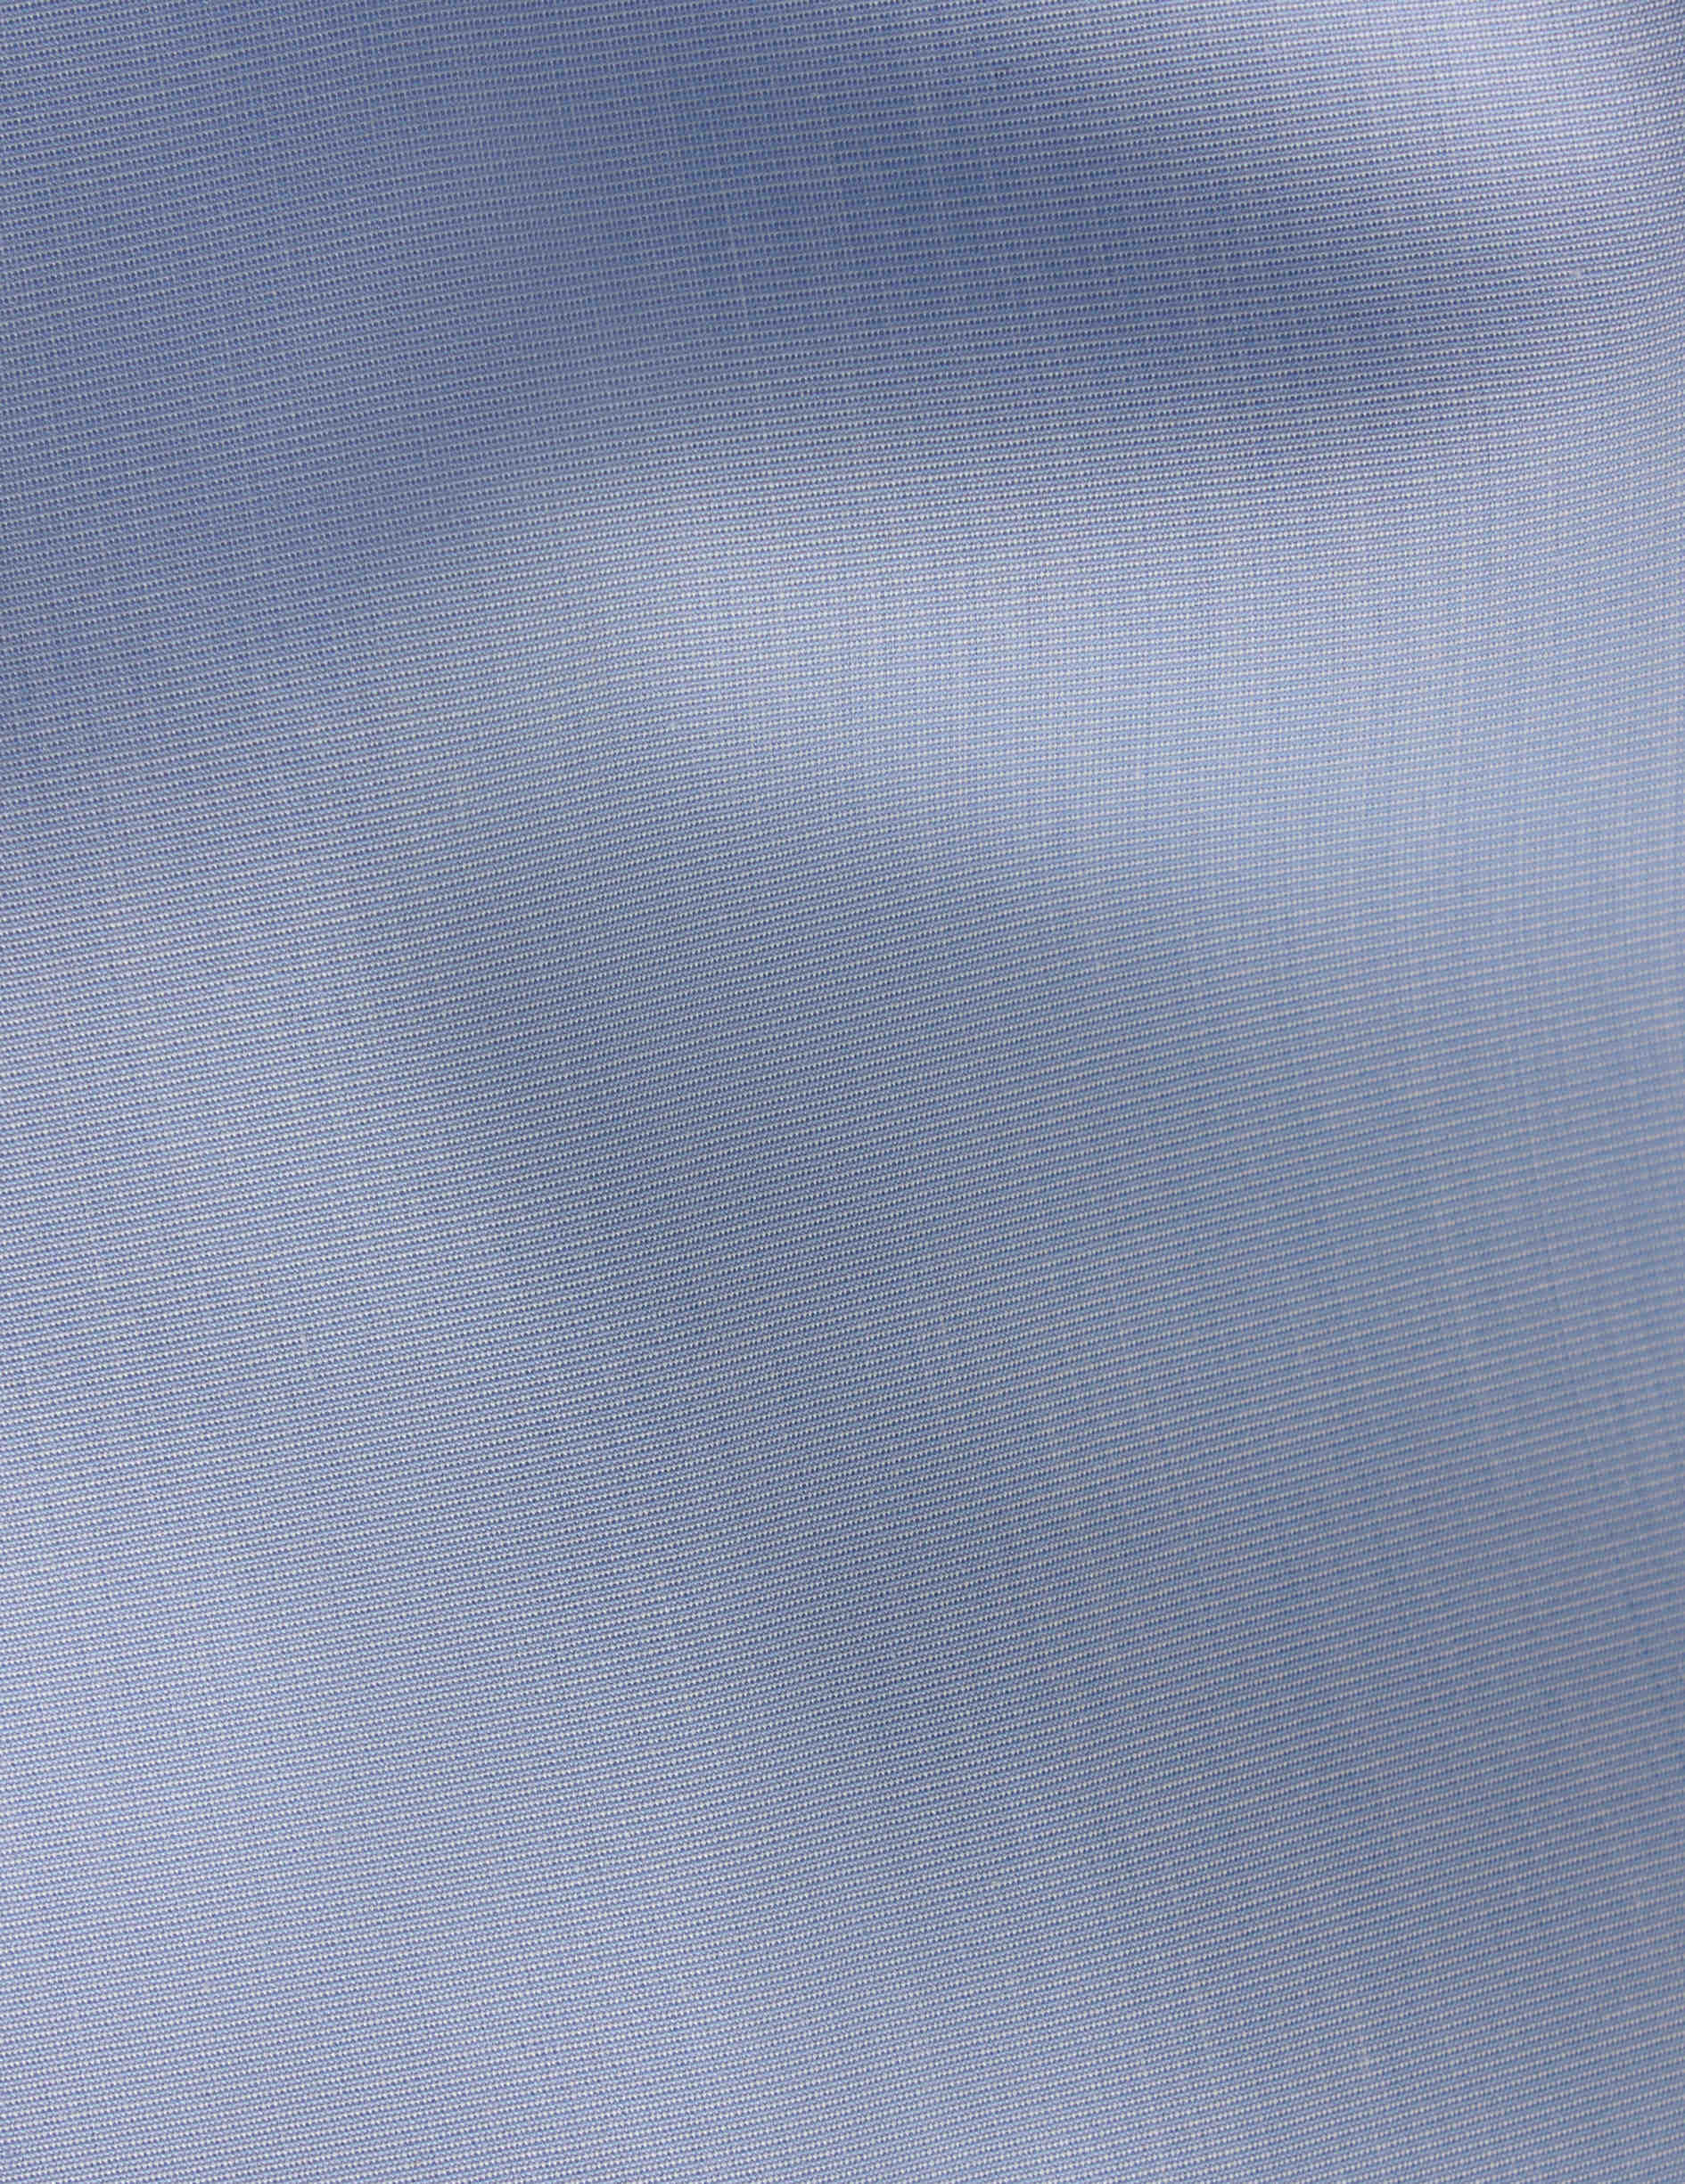 Chemise Ajustée Infroissable bleue - Fil-à-fil - Col Figaret